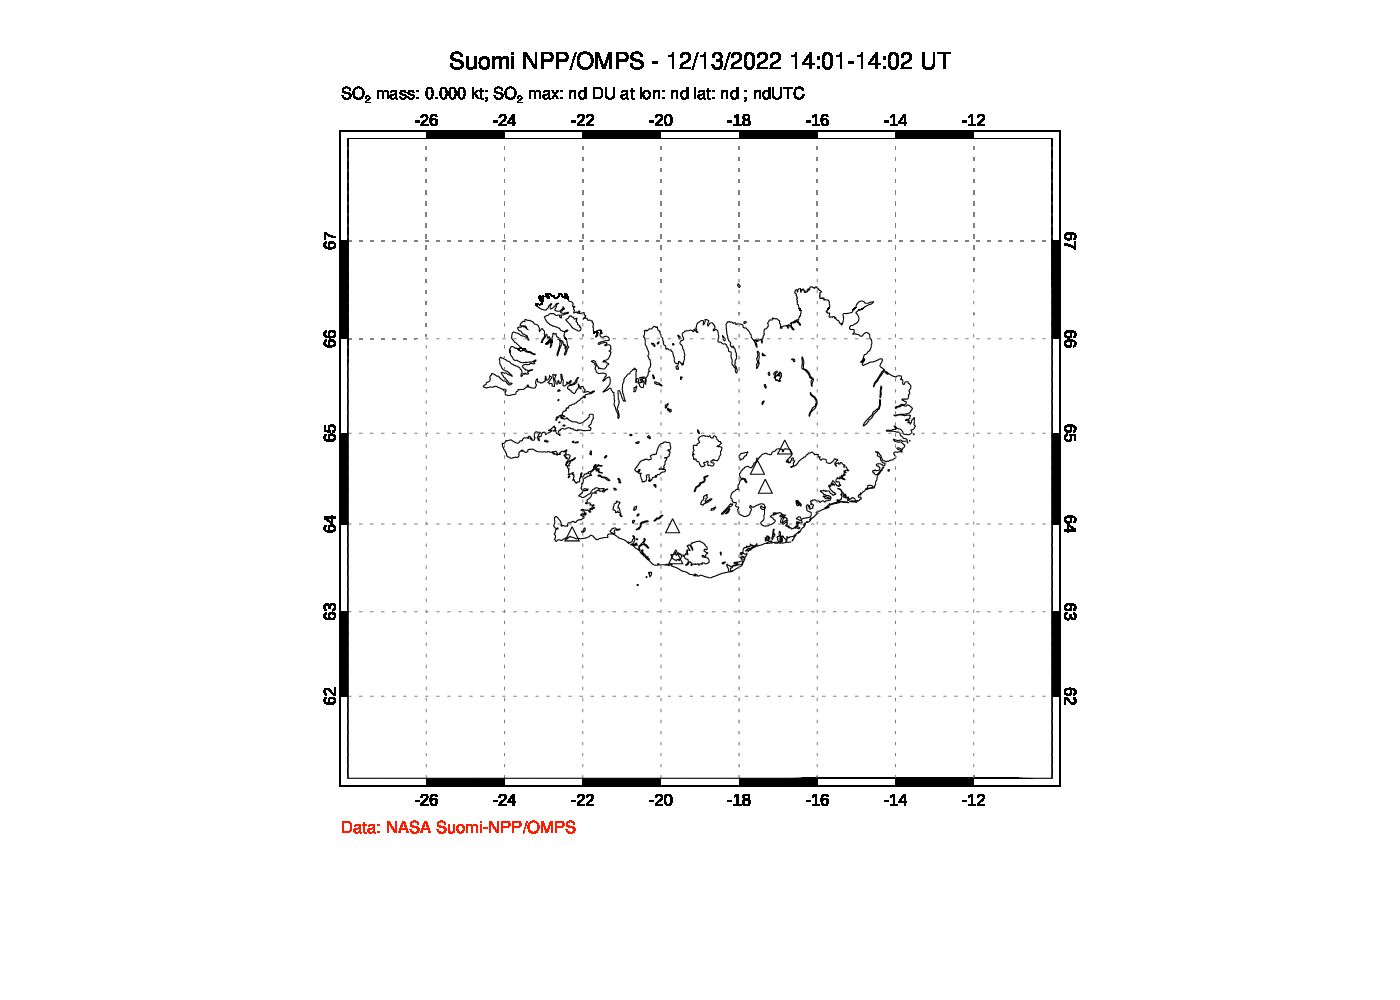 A sulfur dioxide image over Iceland on Dec 13, 2022.